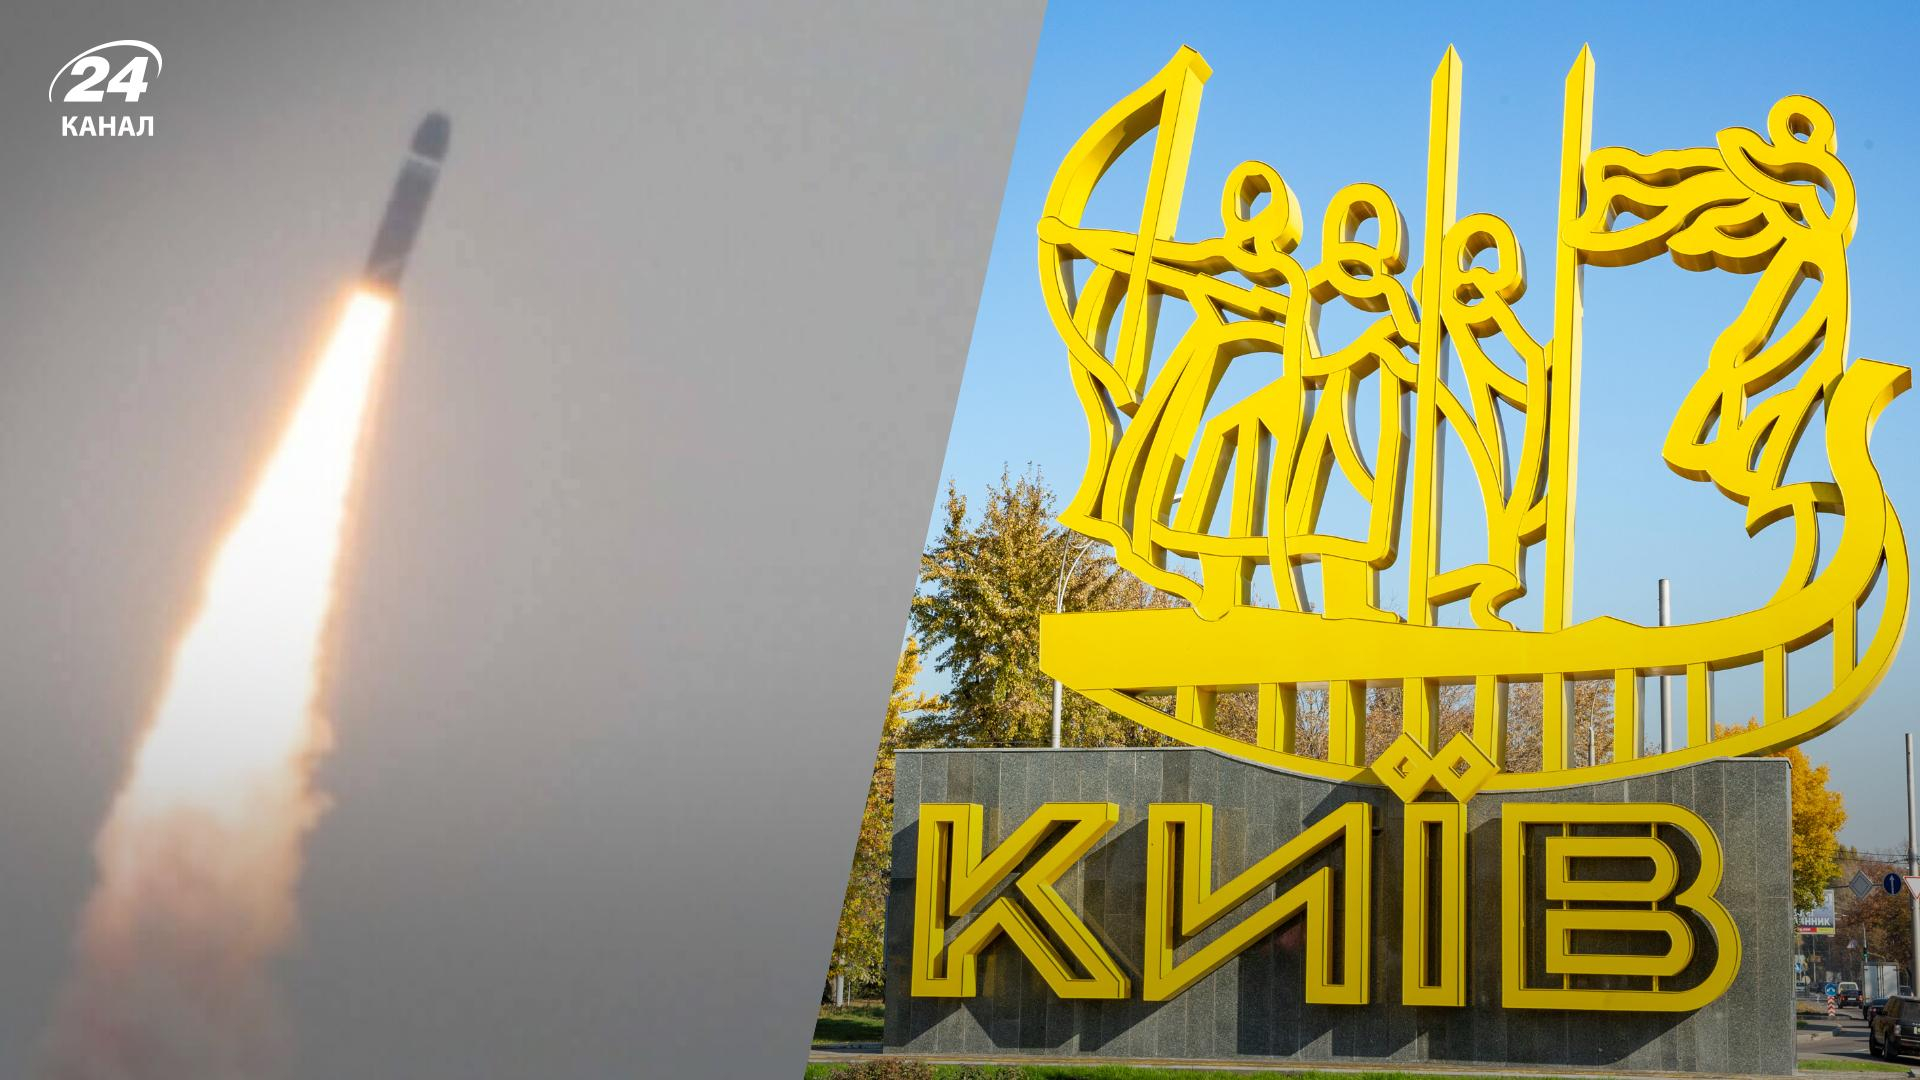 В Киеве раздаются взрывы: находитесь в укрытии